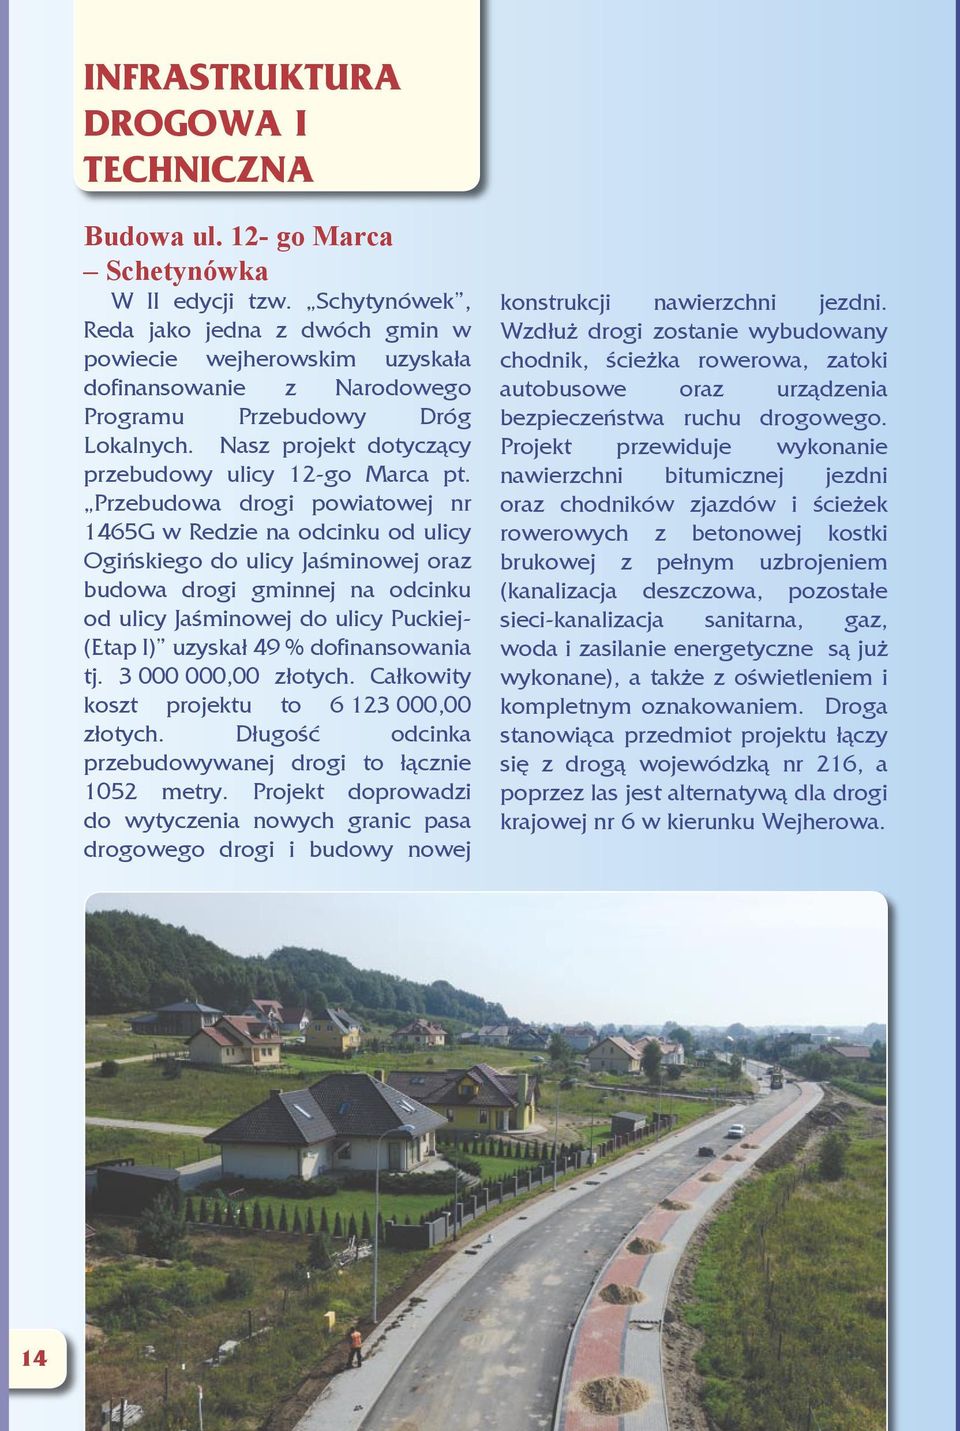 Przebudowa drogi powiatowej nr 1465G w Redzie na odcinku od ulicy Ogińskiego do ulicy Jaśminowej oraz budowa drogi gminnej na odcinku od ulicy Jaśminowej do ulicy Puckiej- (Etap I) uzyskał 49 %